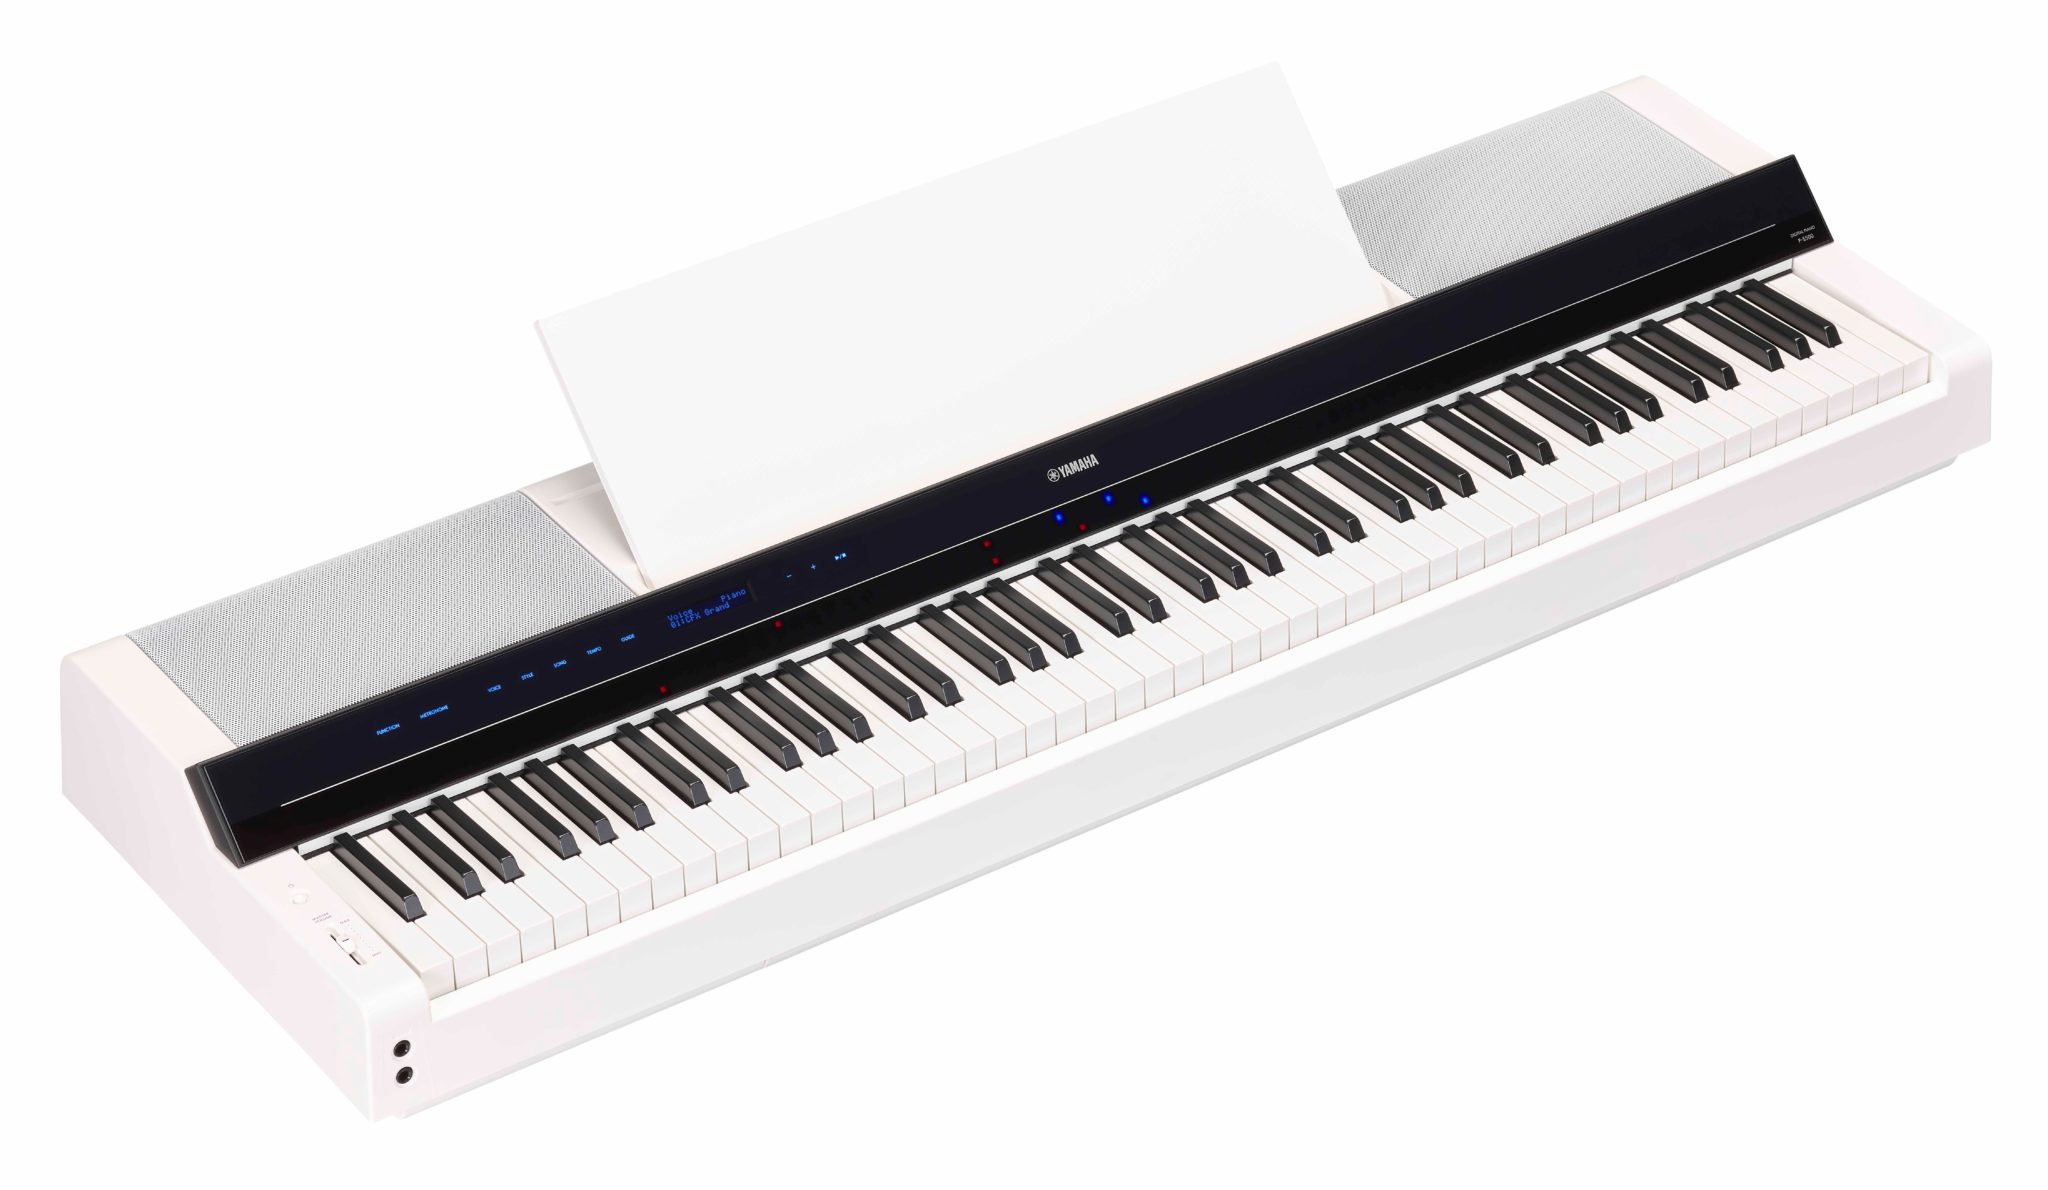 Piano numérique YAMAHA P-S500